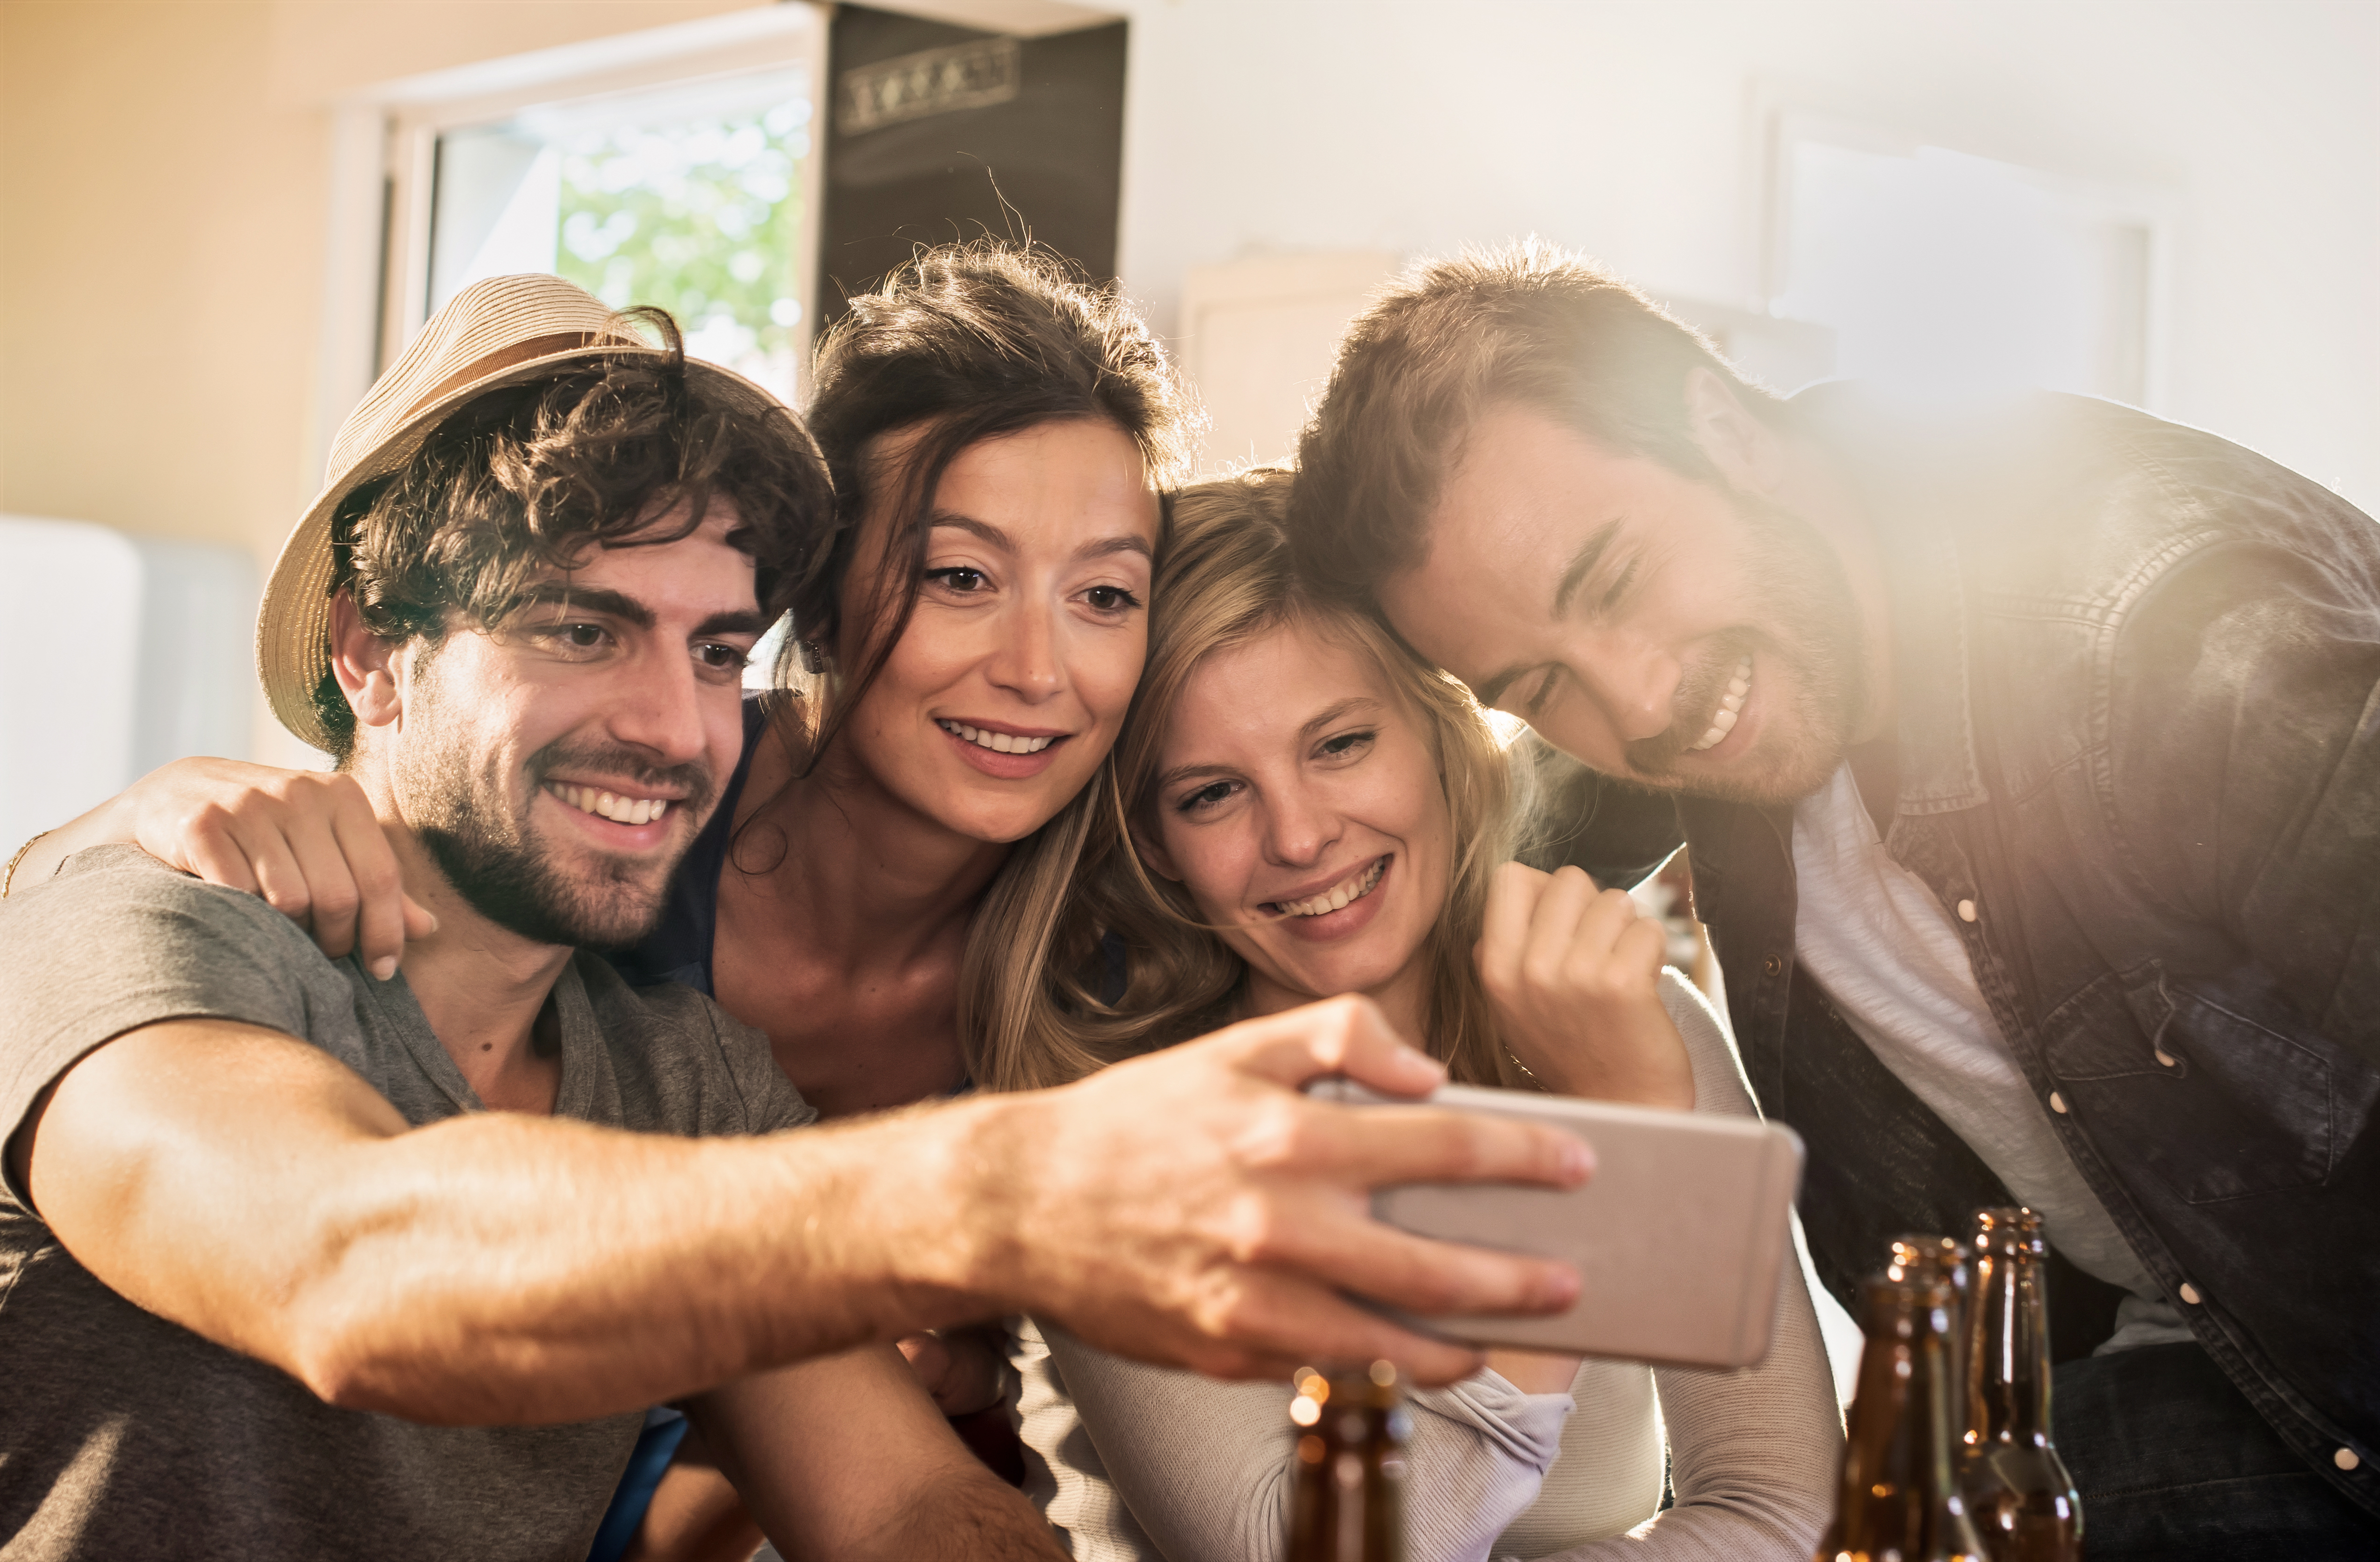 Friends taking a selfie on a smartphone | Source: Shutterstock